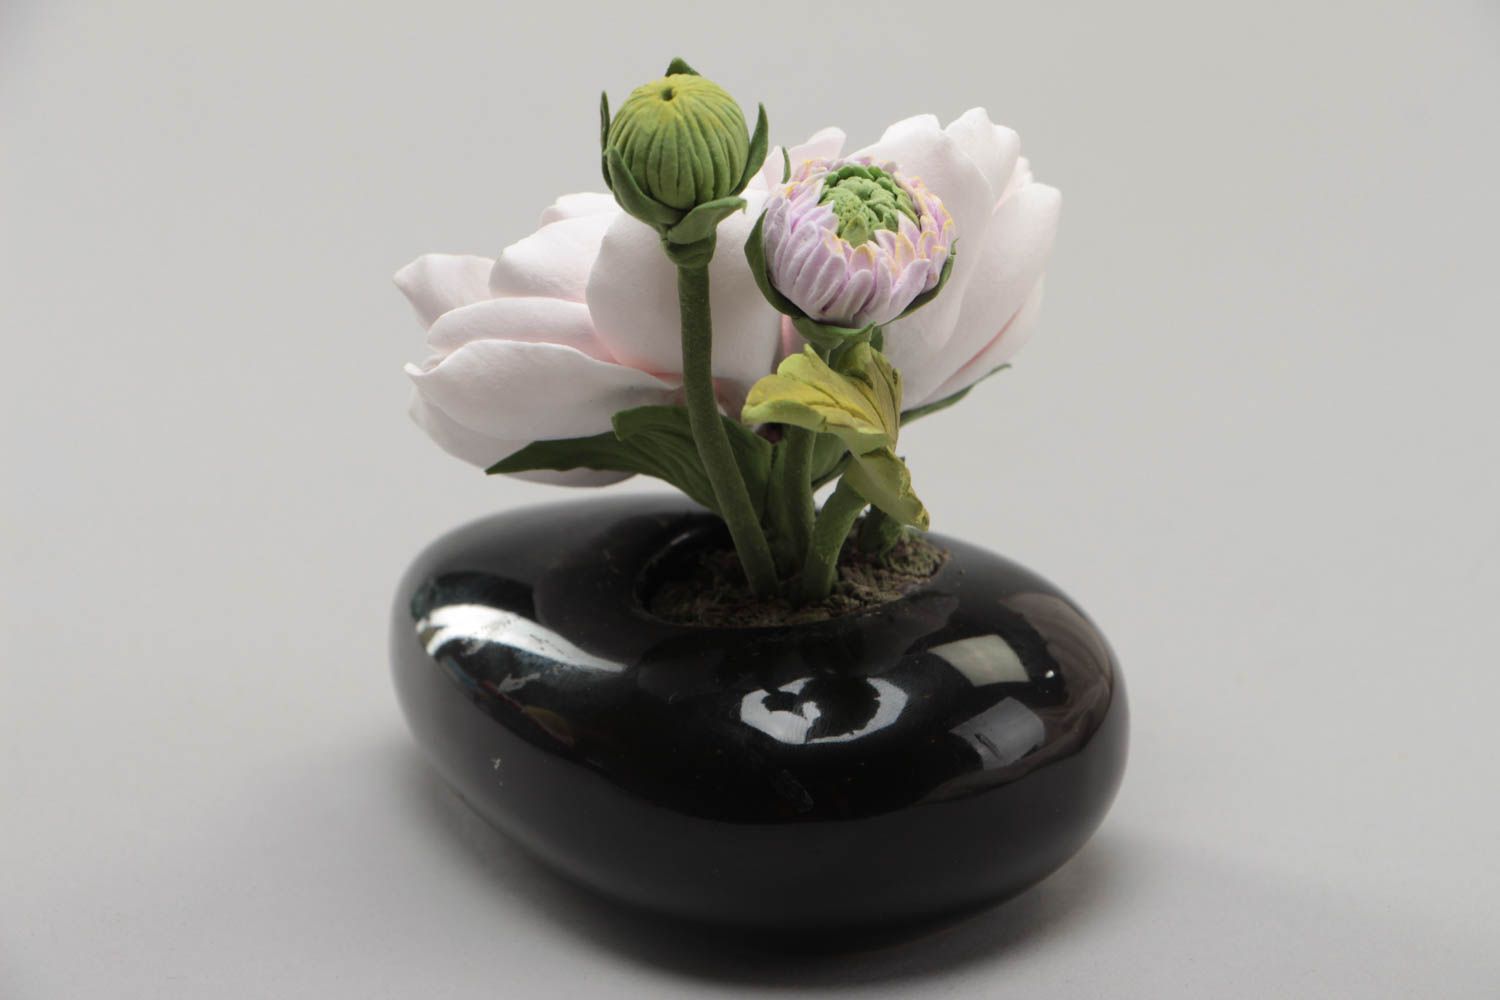 Handmade decorative polymer clay flower for interior design Dahlia photo 3